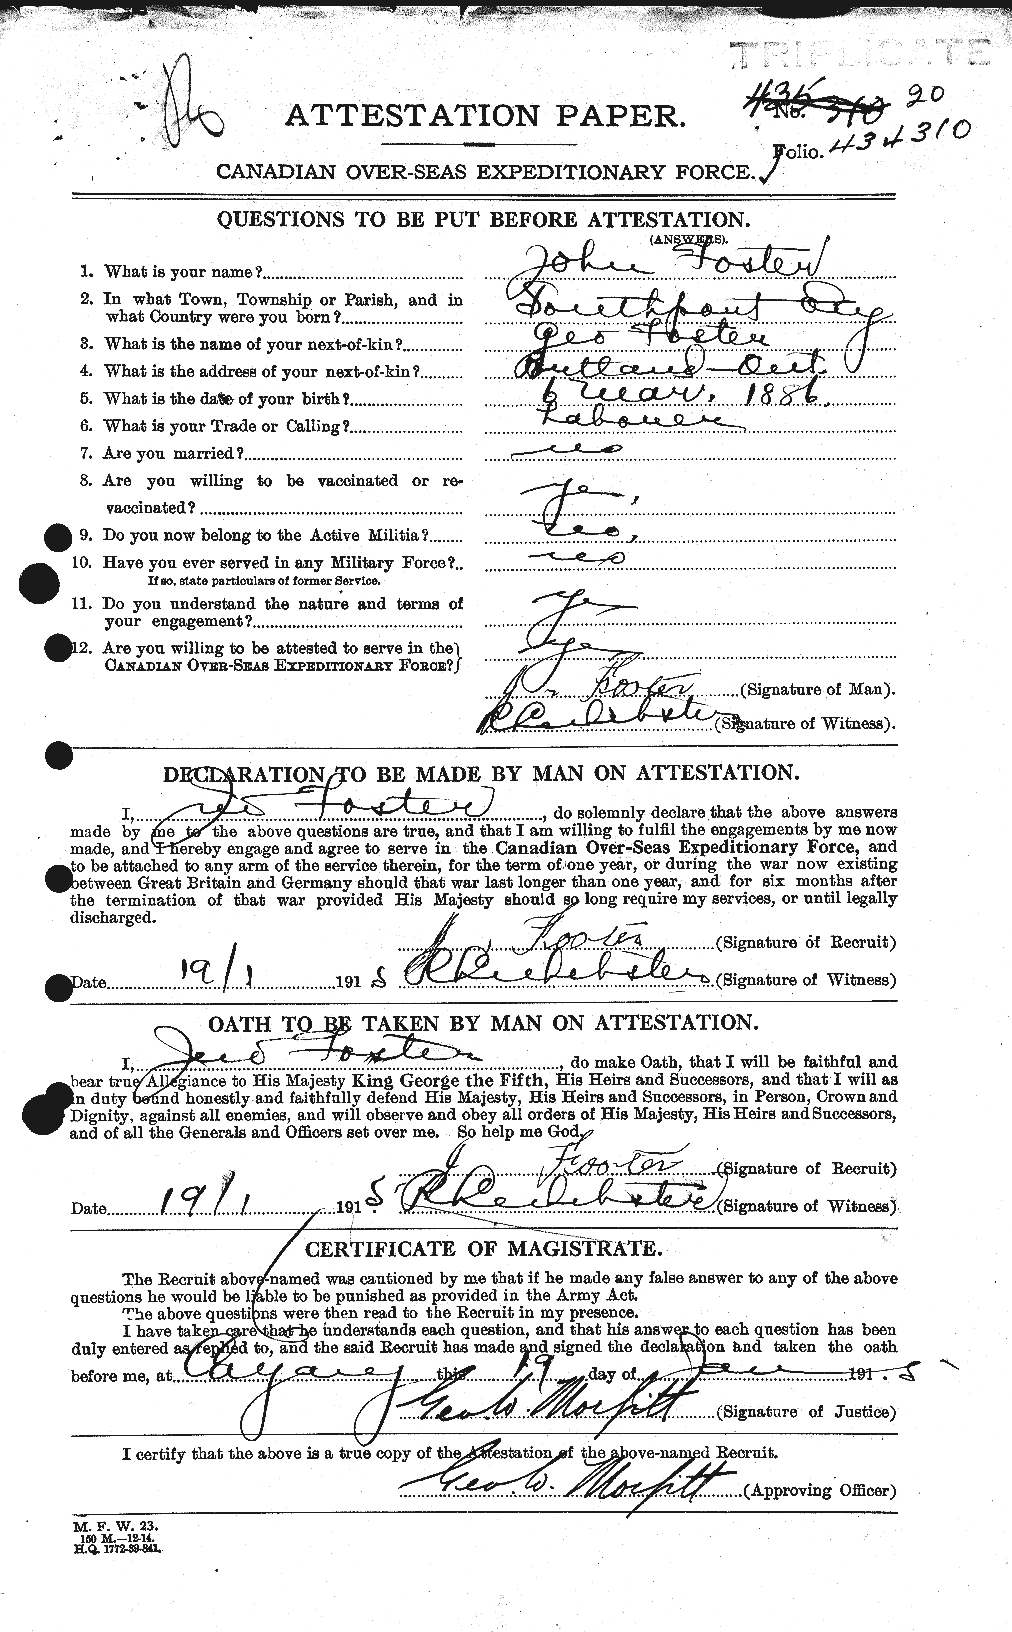 Dossiers du Personnel de la Première Guerre mondiale - CEC 333344a